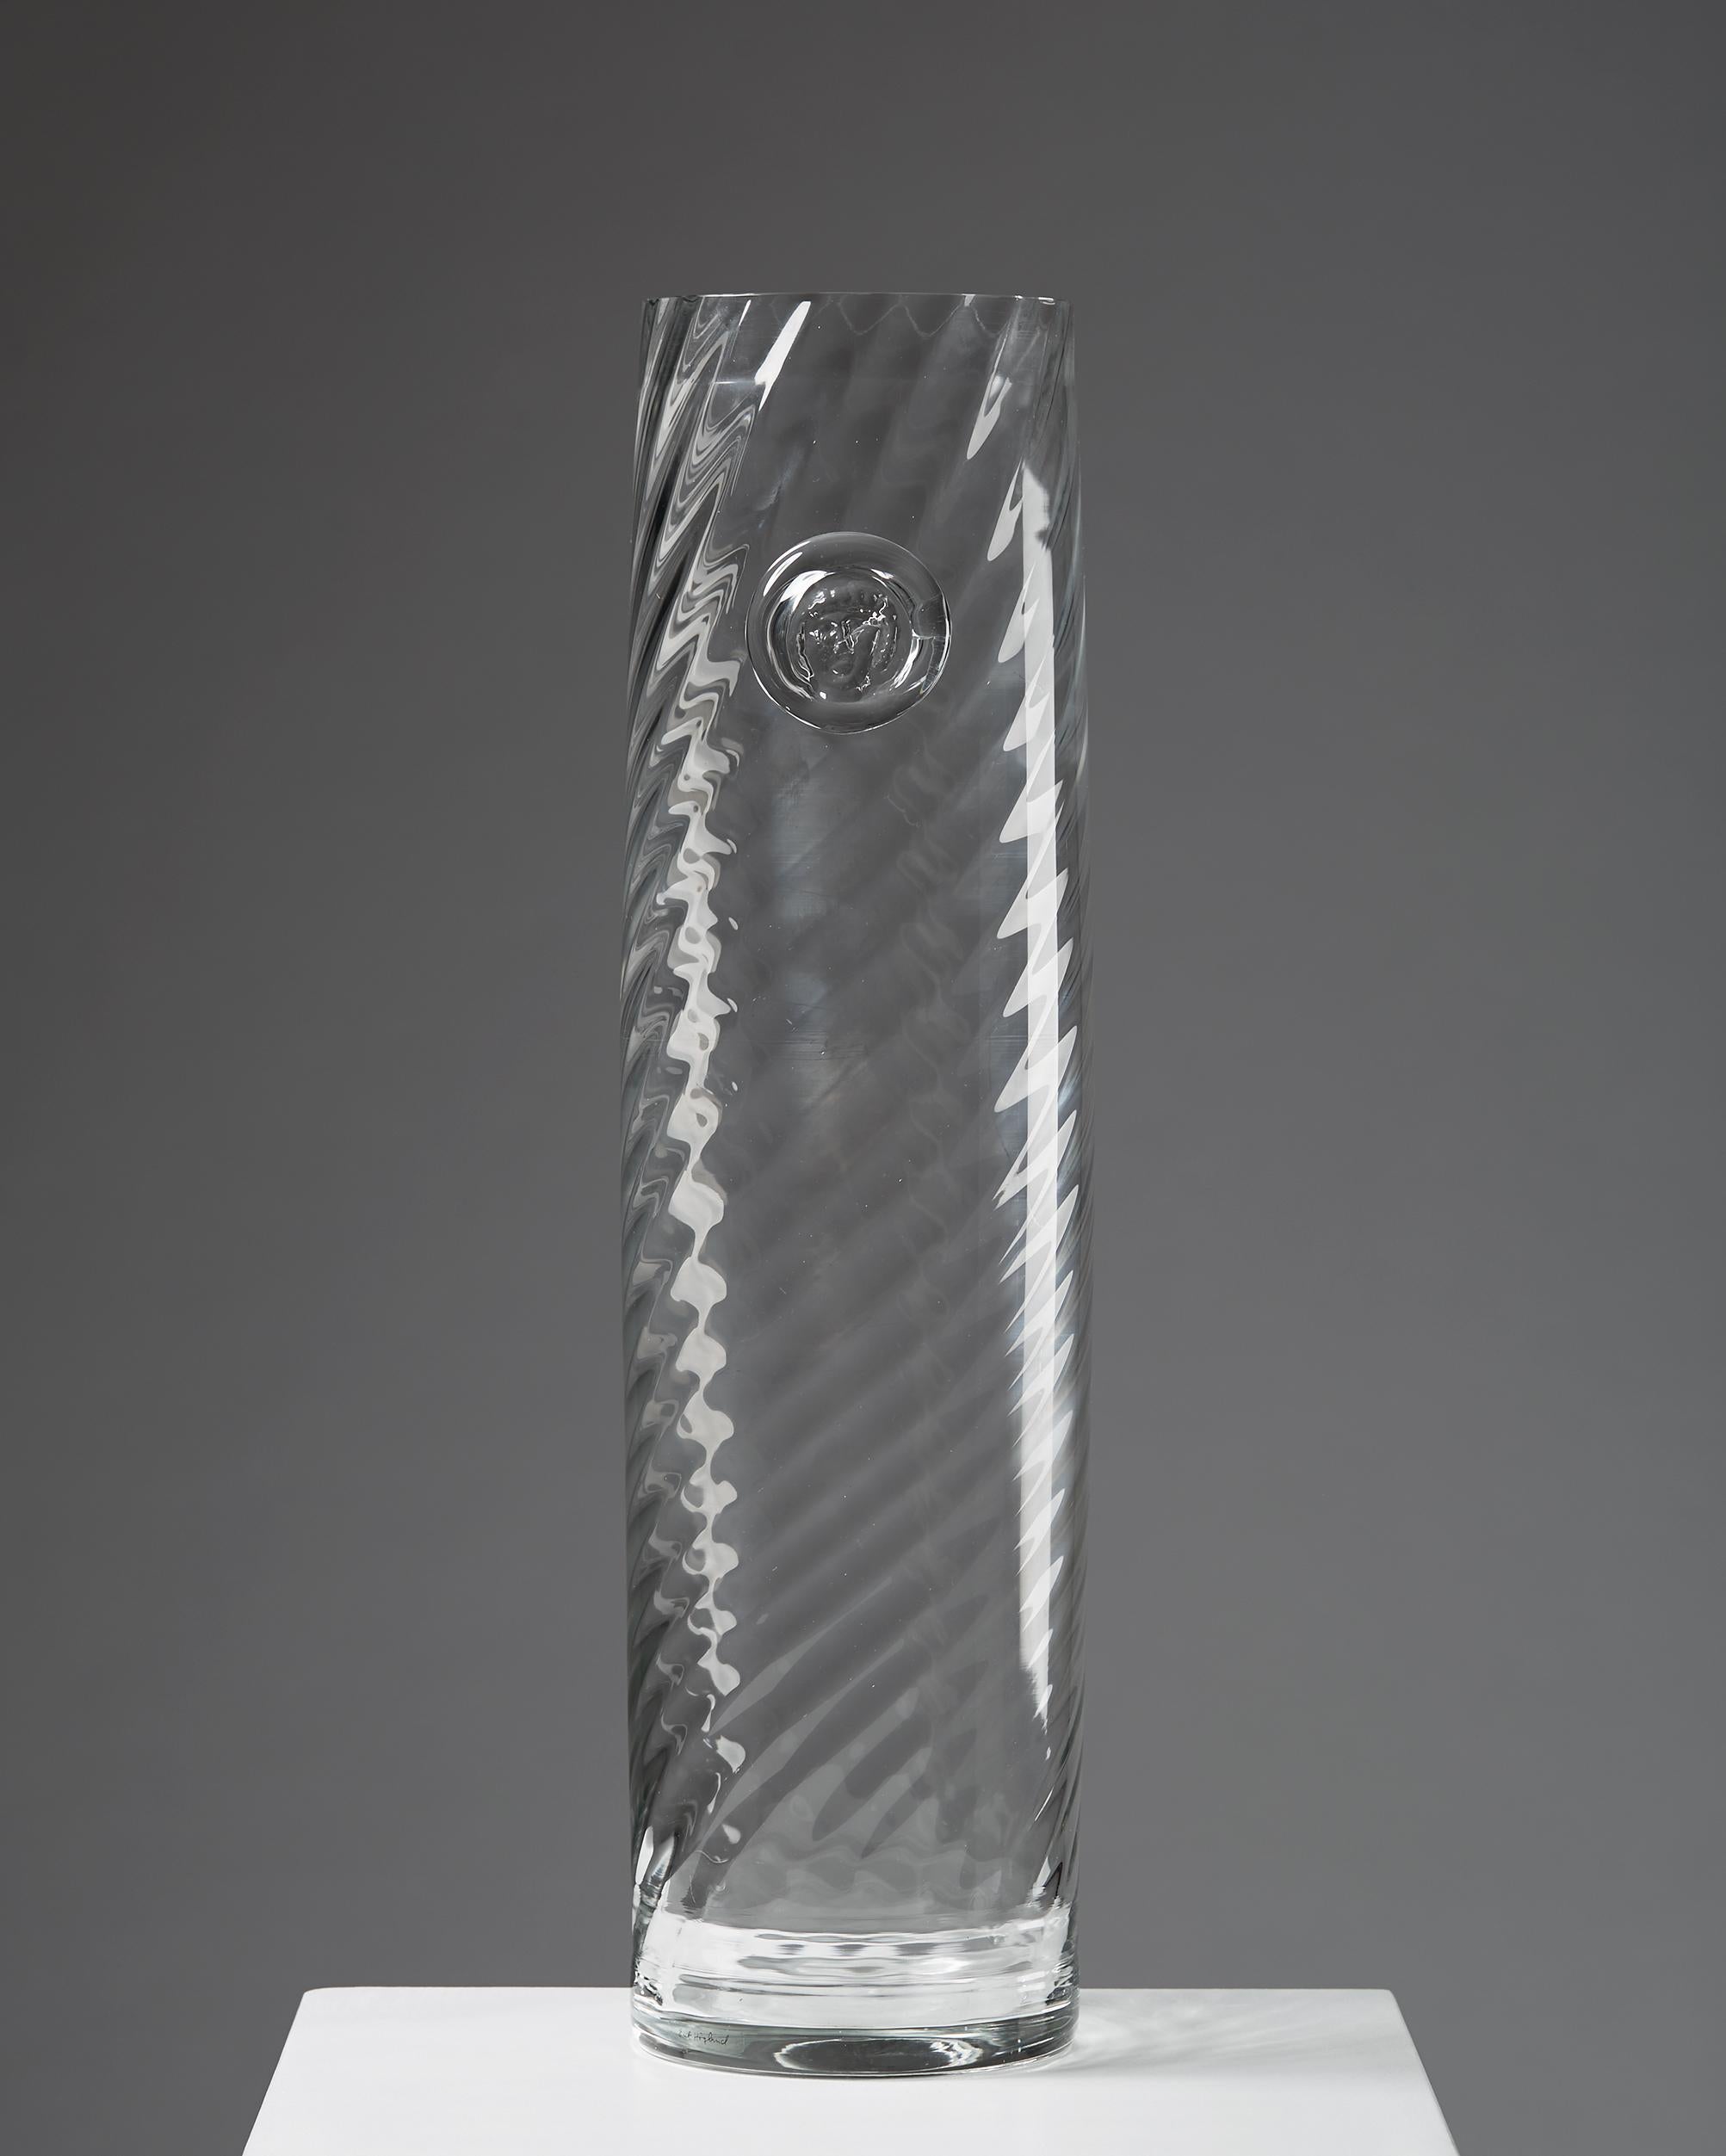 Vase en verre conçu par Erik Höglund.

Mesures : H 54 cm/ 21 1/4